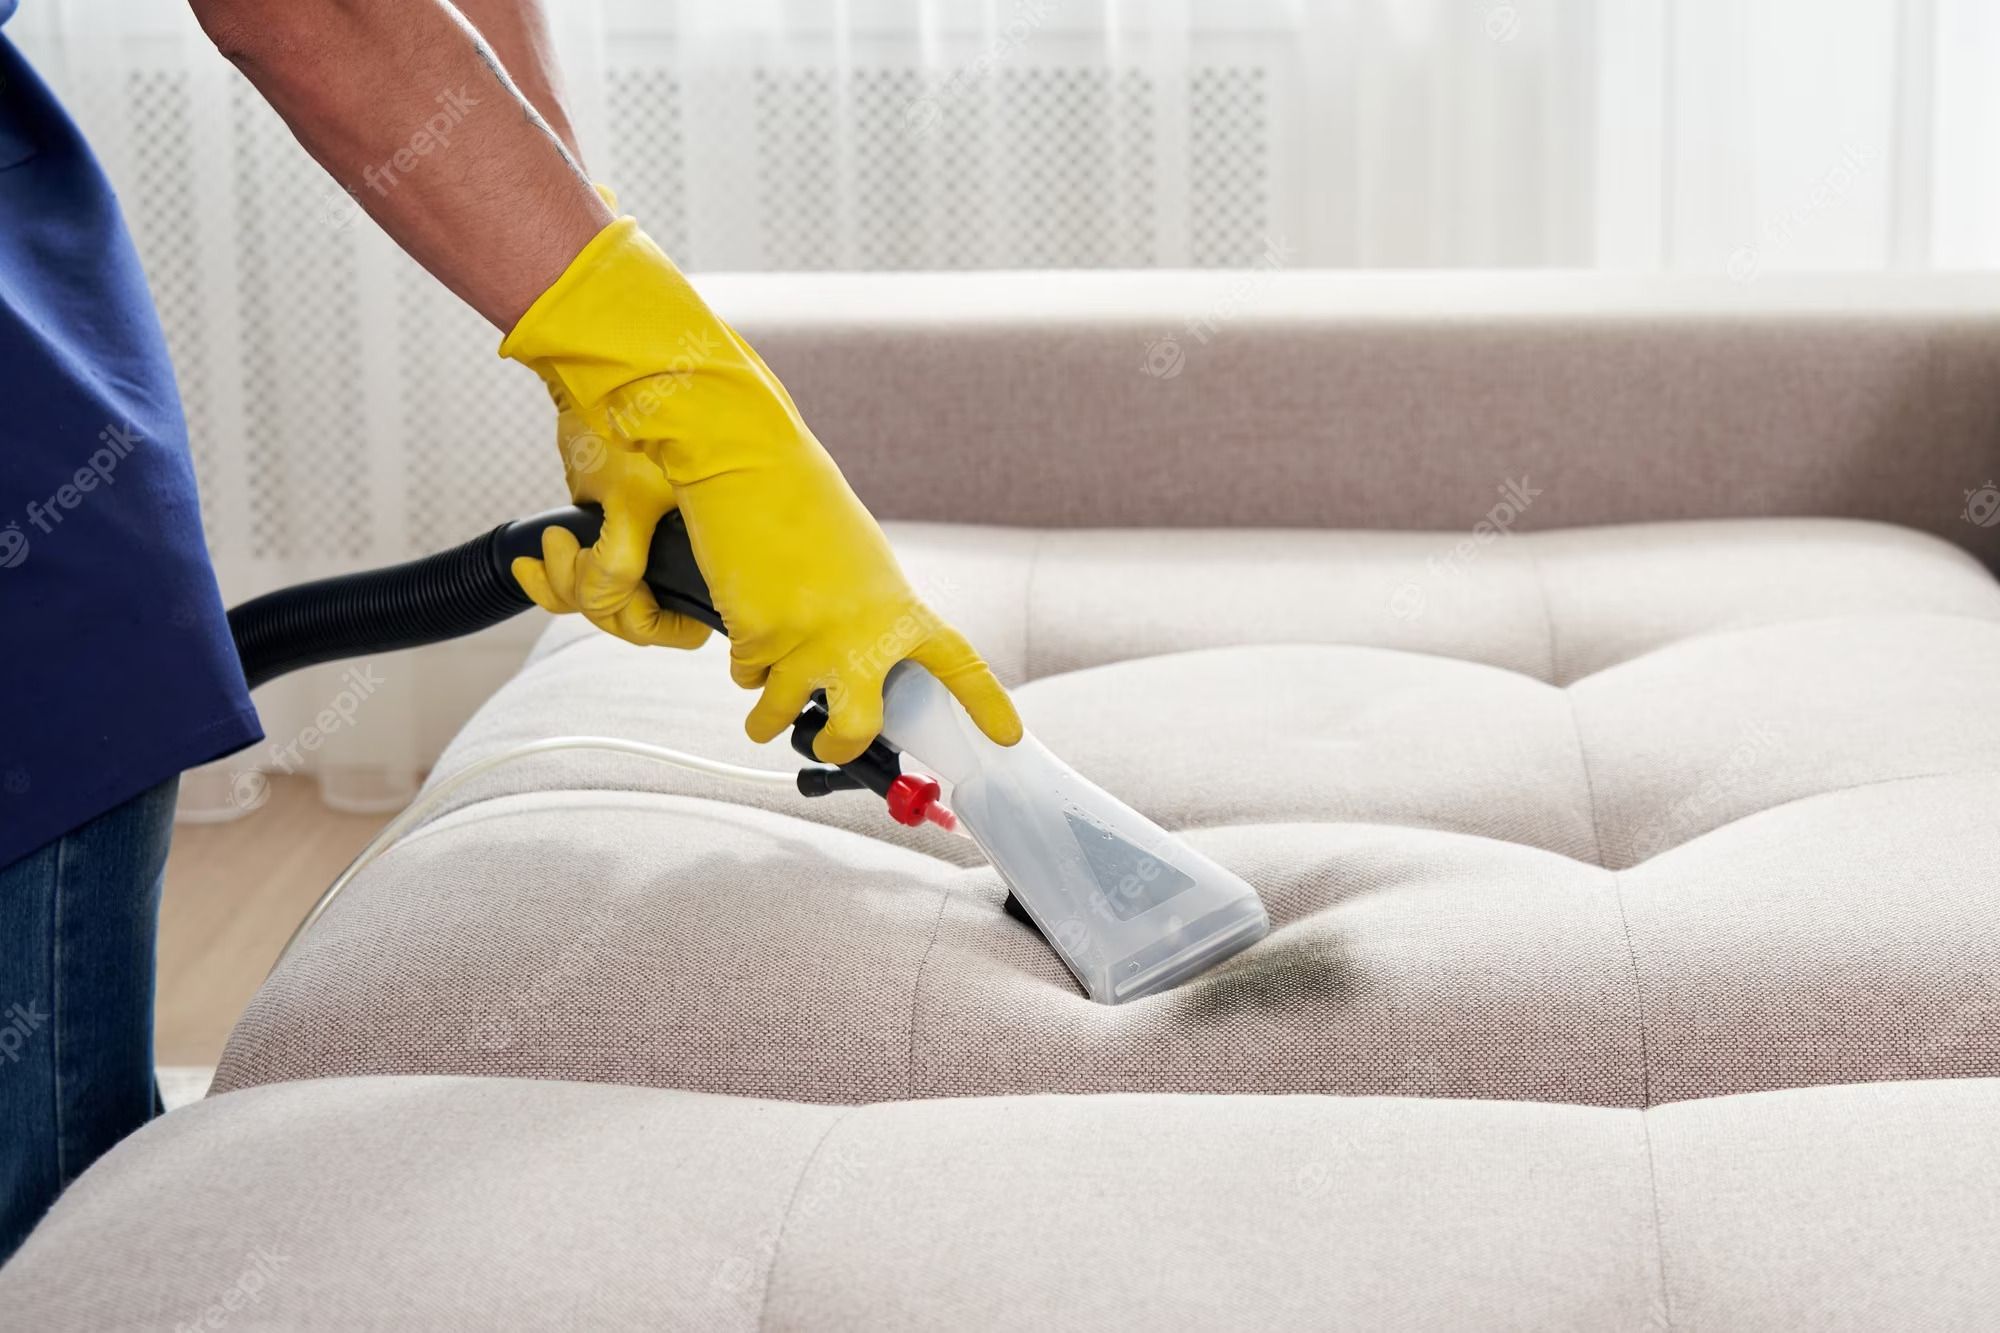 Как пылесосить диван - советы от экспертов, которые помогут очистить мягкую мебель - Недвижимость